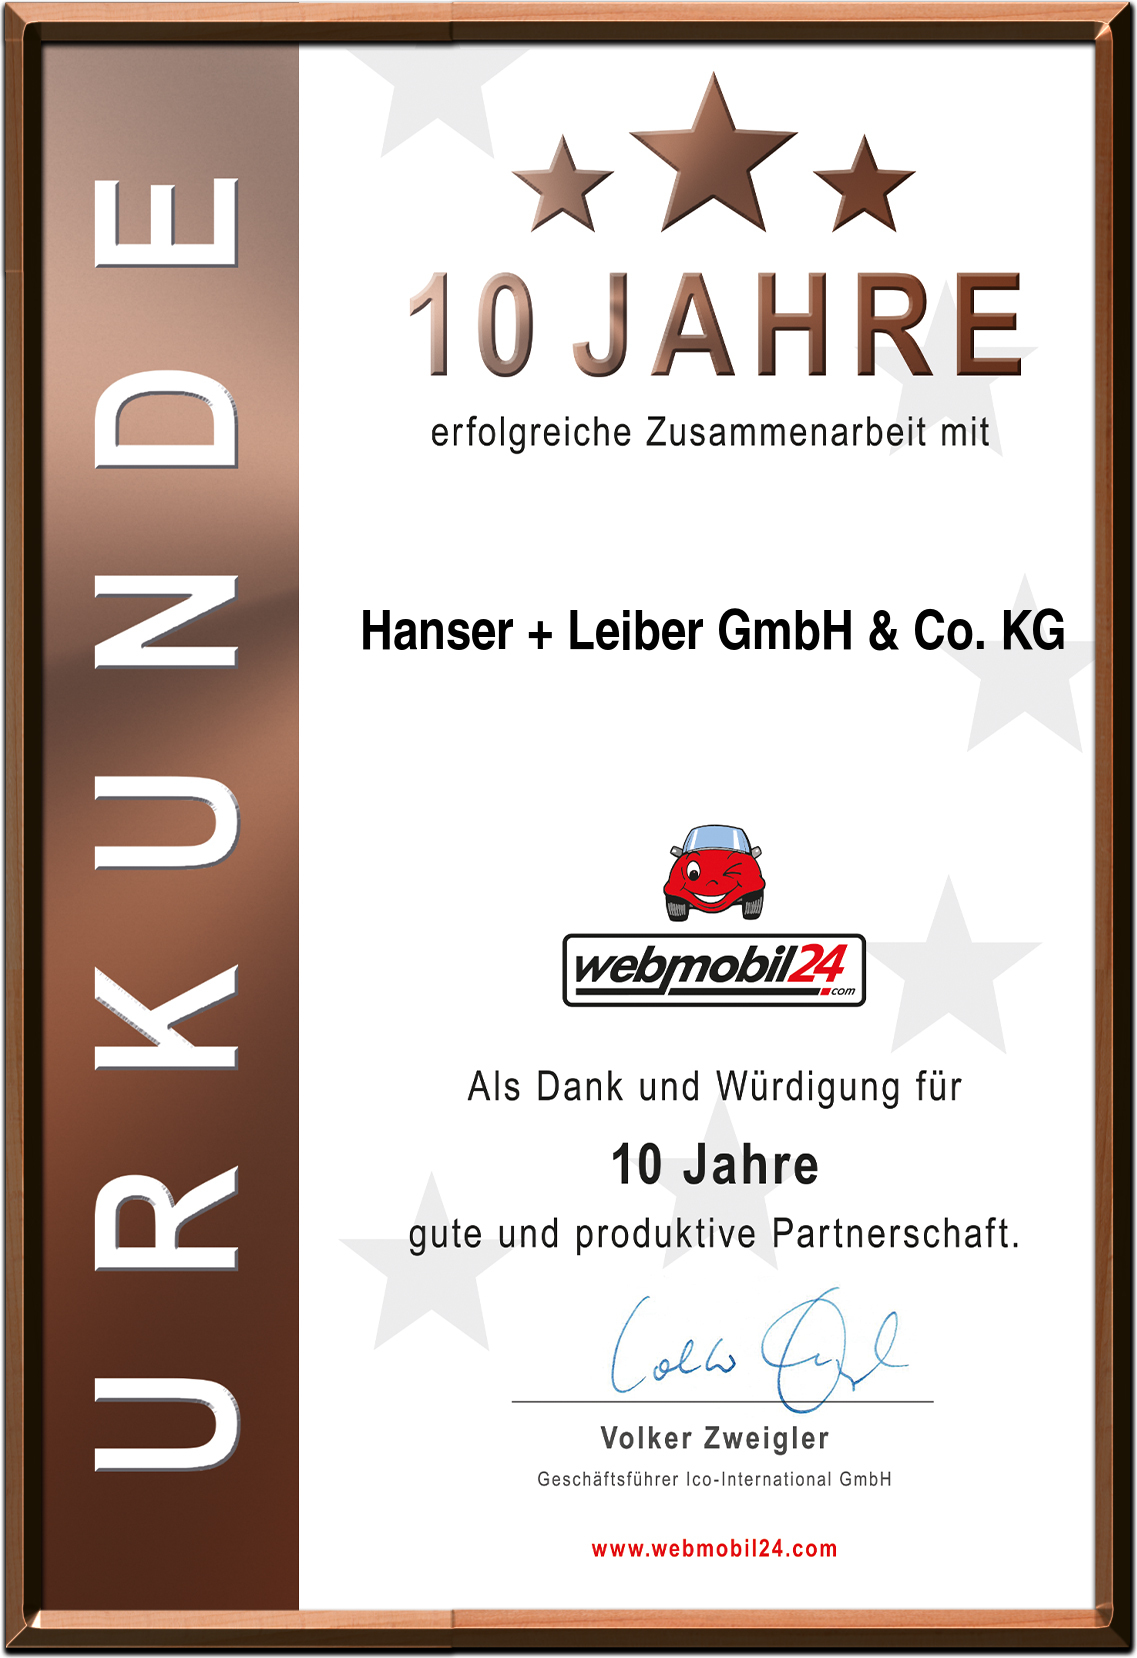 Hanser + Leiber GmbH & Co. KG